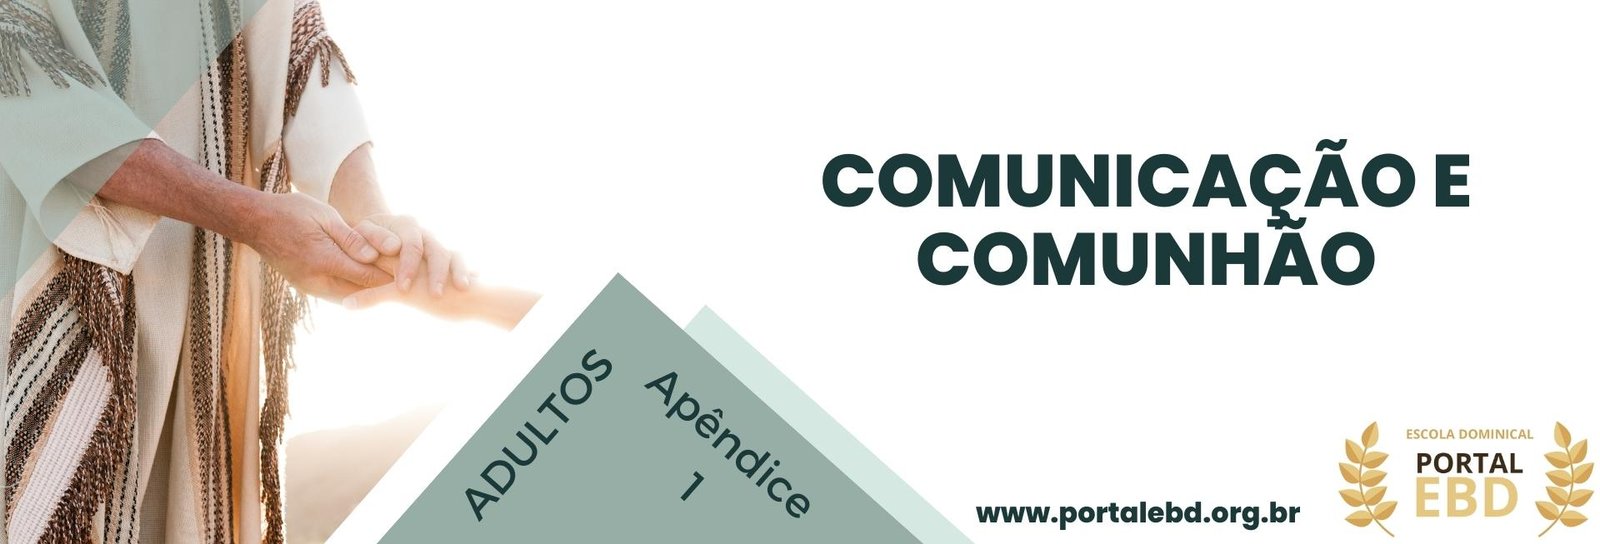 Apêndice 1 - Comunicação e comunhão